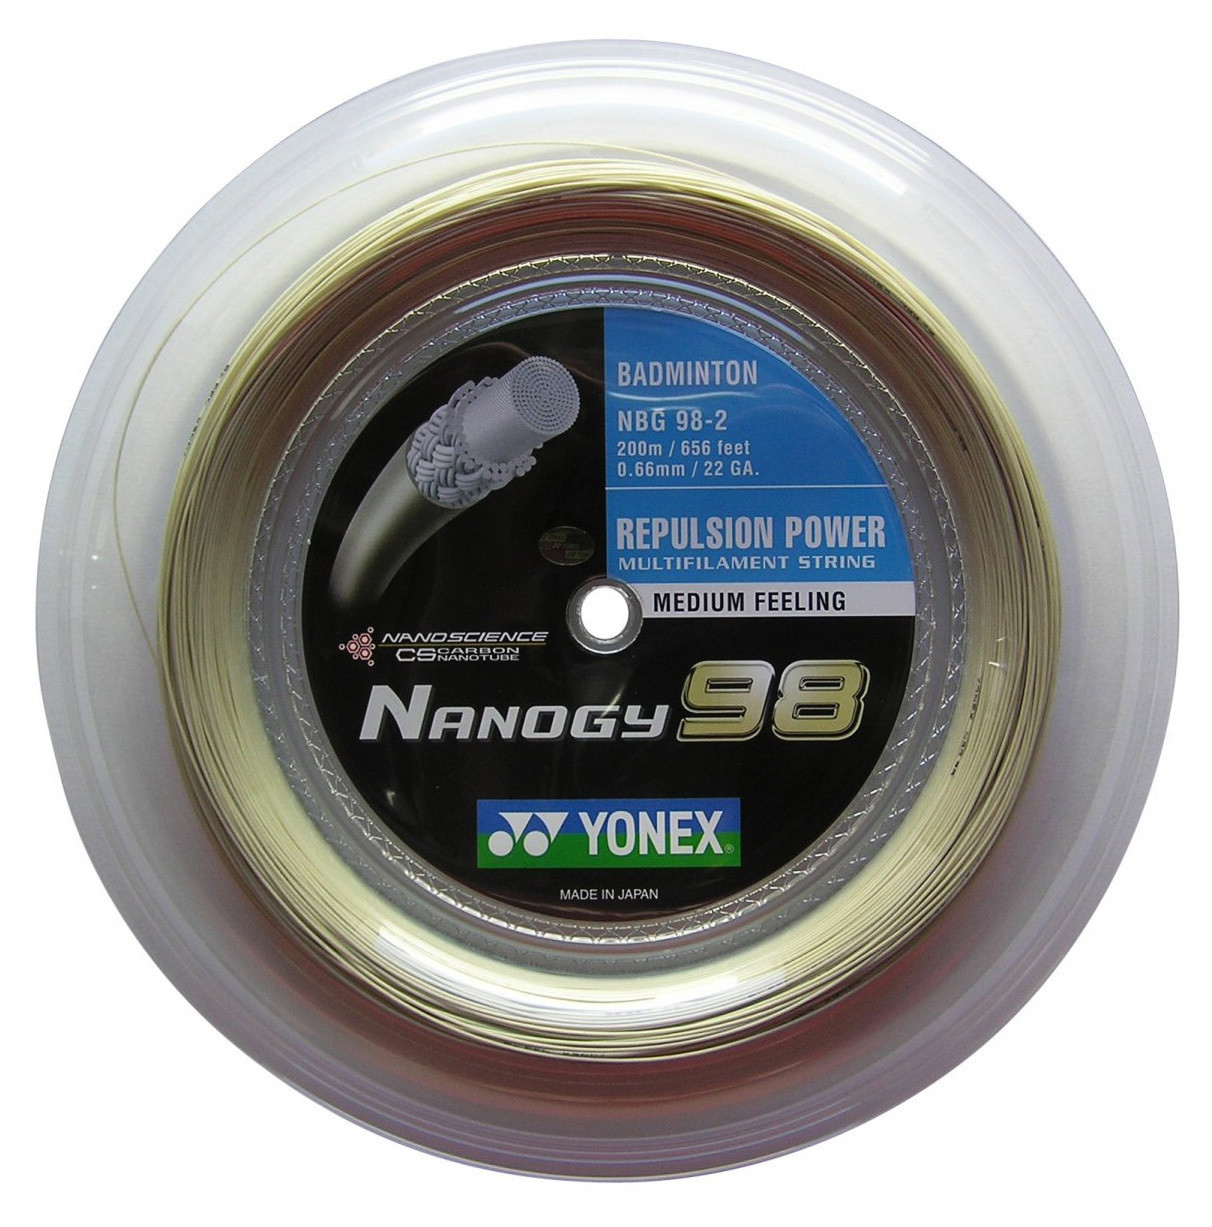 Yonex Nanogy 98 Badminton String - 200m Reel